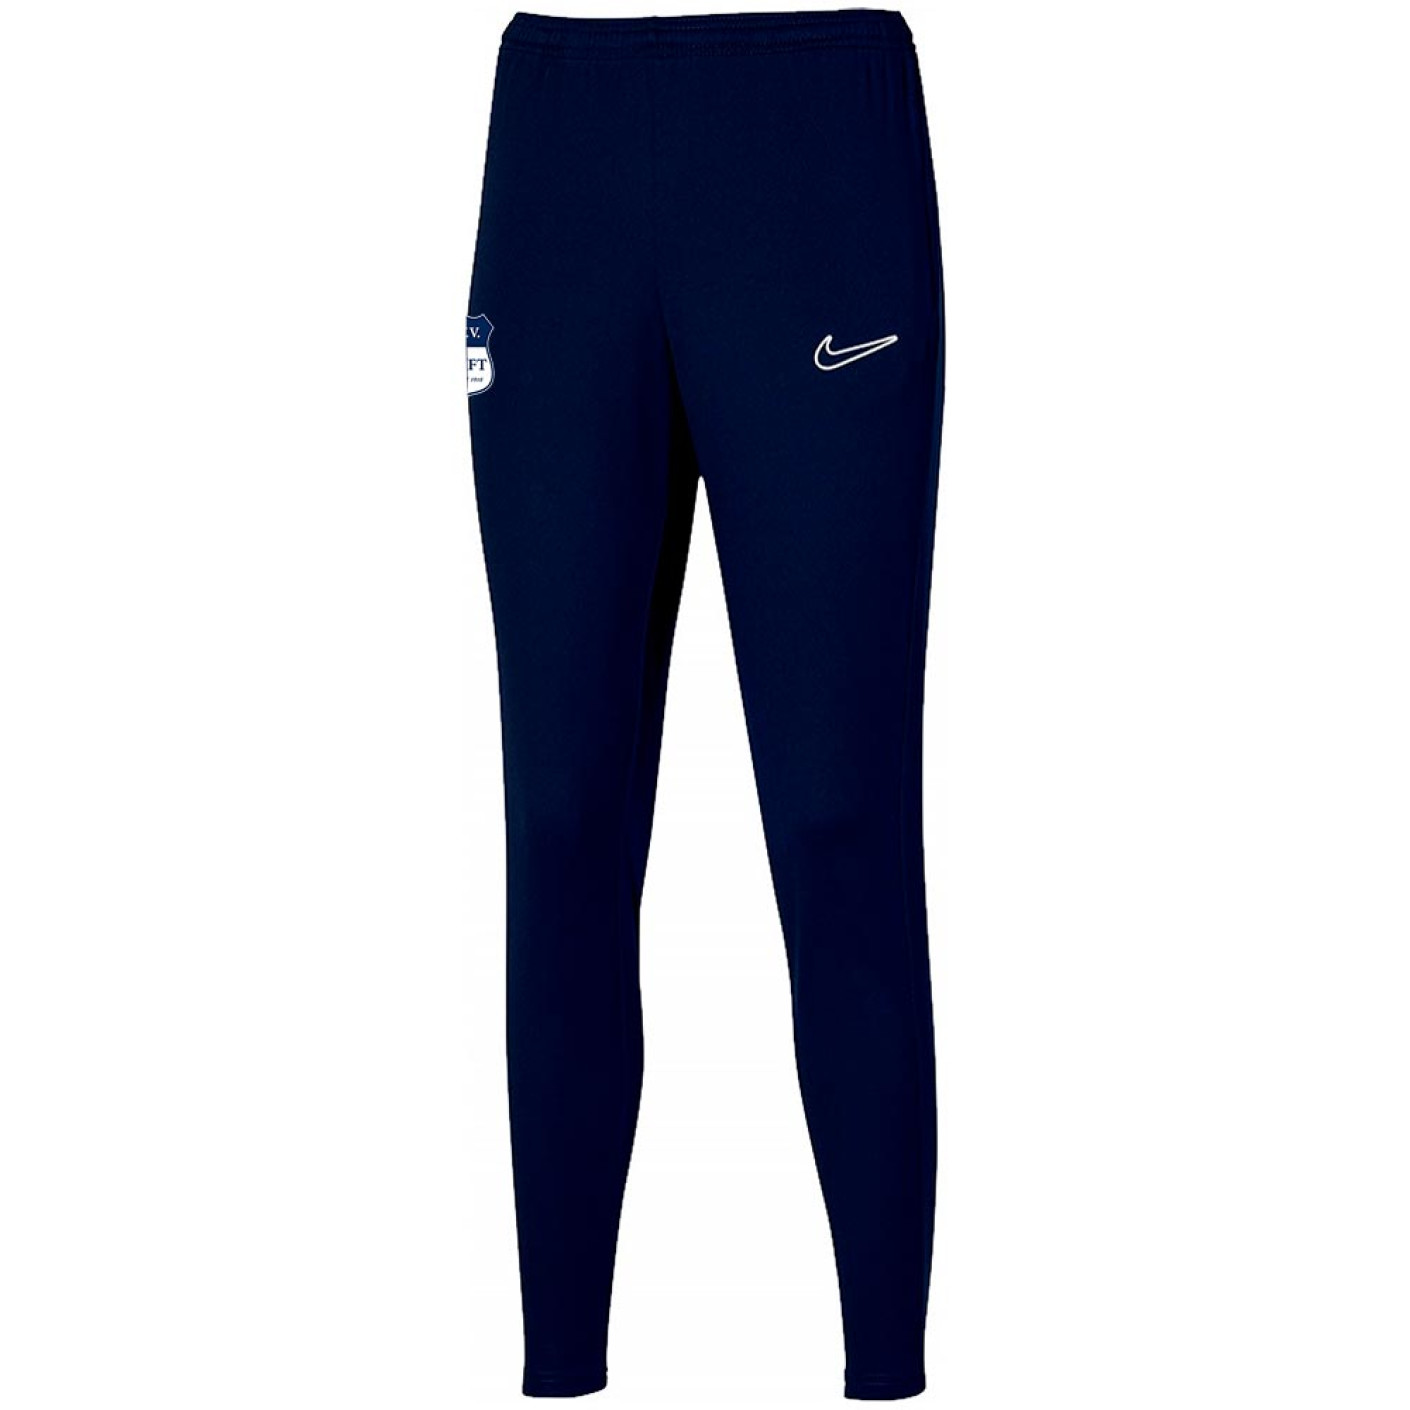 Pantalon de jogging AVV Swift pour femme, bleu foncé, blanc